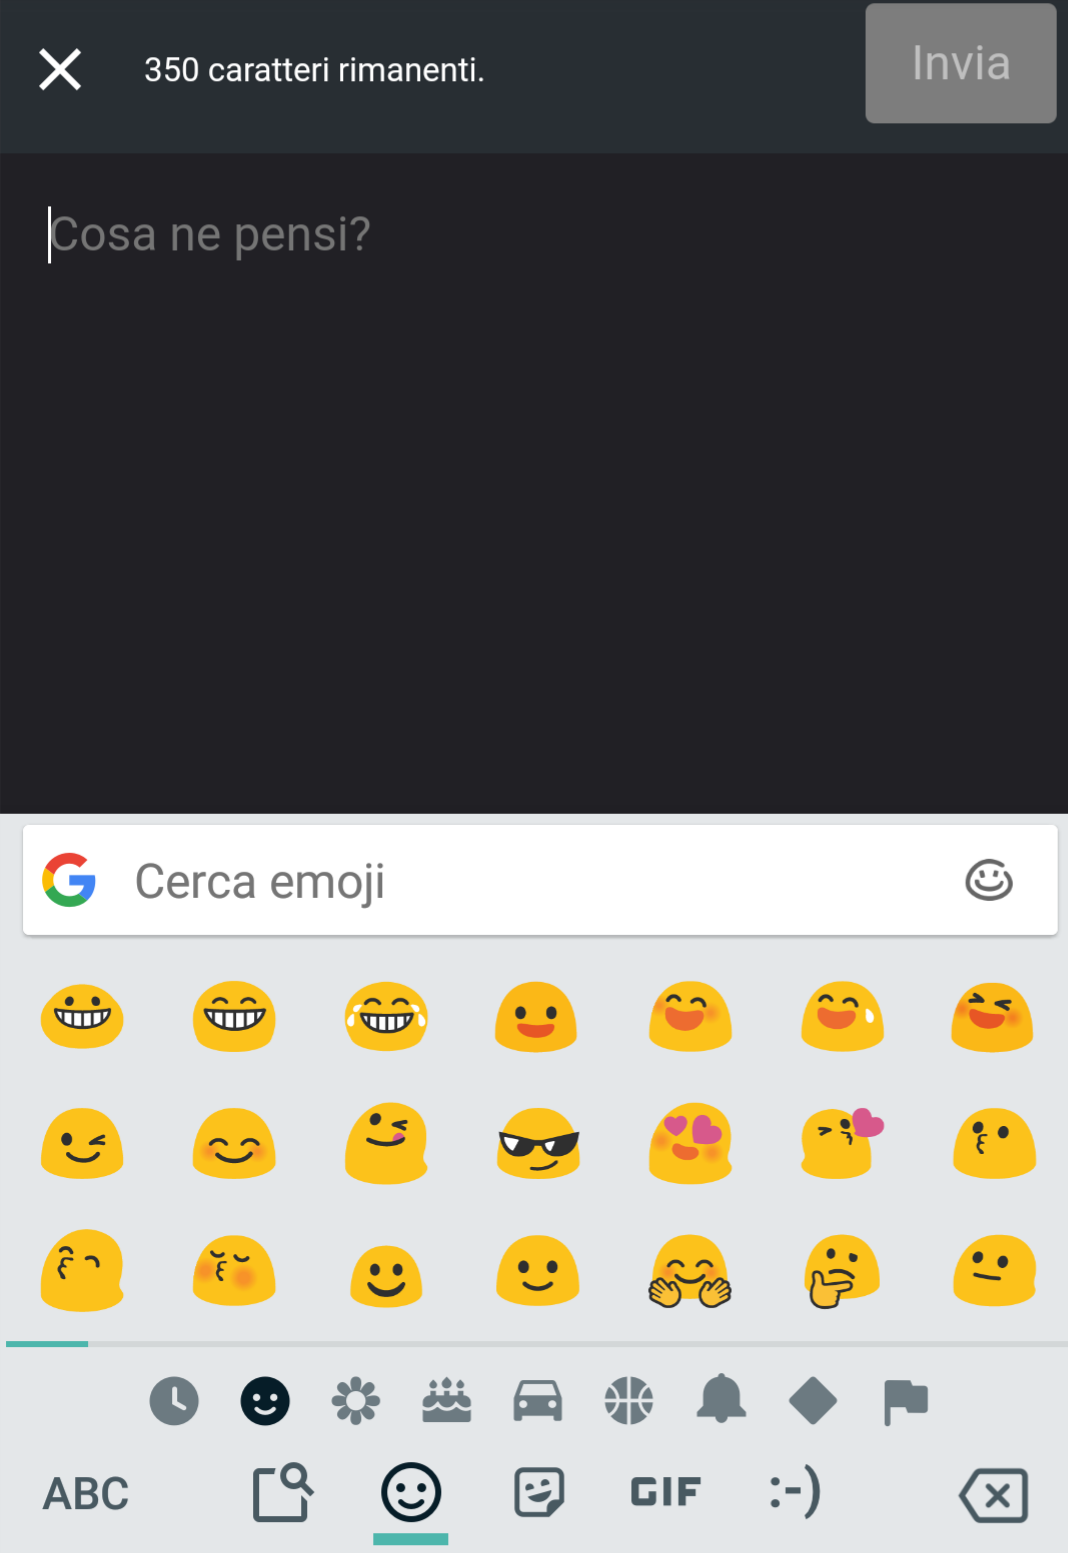 Ma è normale che veda le emoji così? Aiuto ? ho bisogno di un'opinione